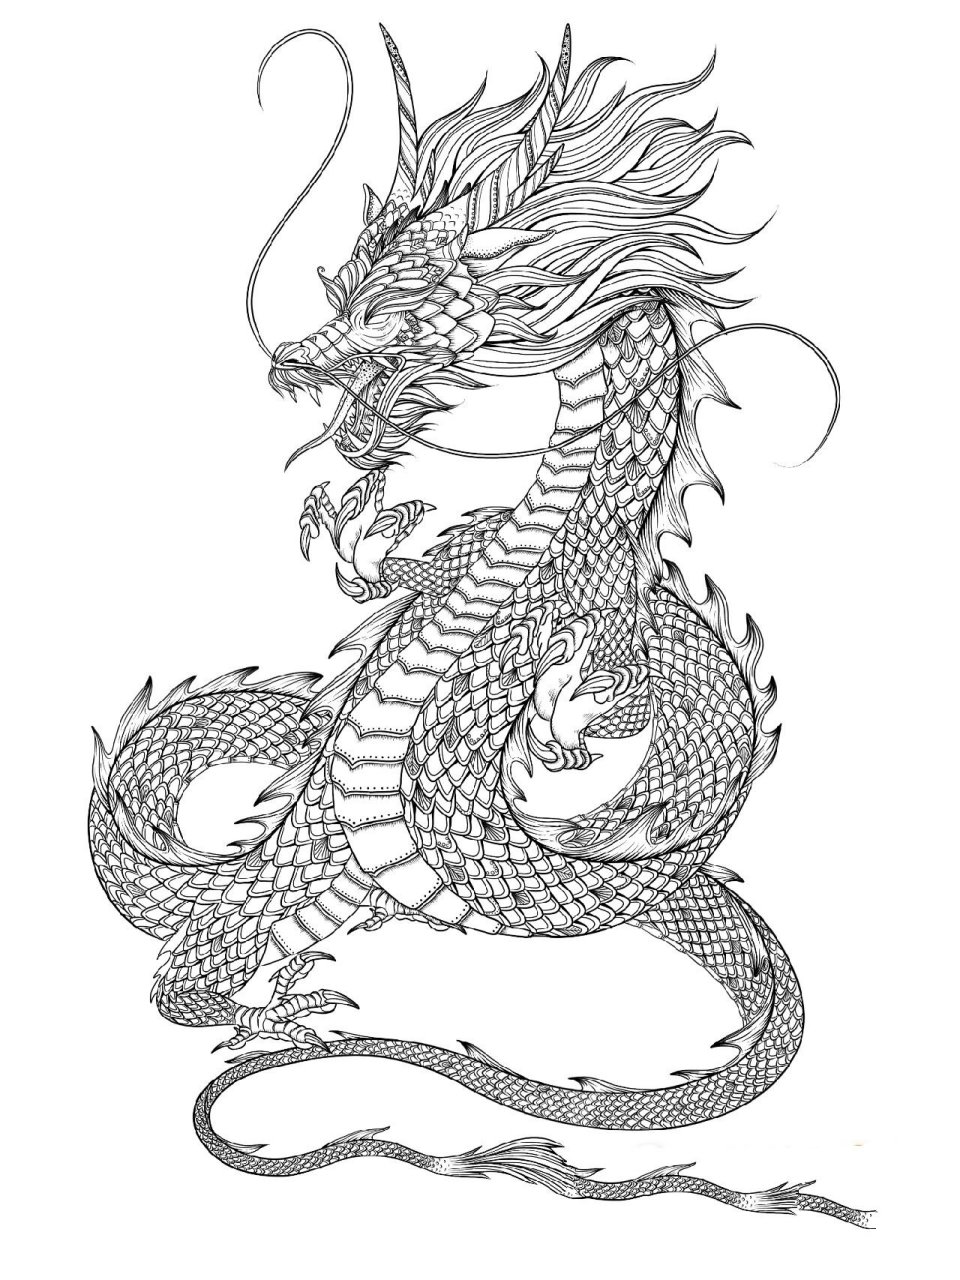 国潮插画—神兽—青龙 青龙,又称苍龙,孟章,是中国古代神话传说中的